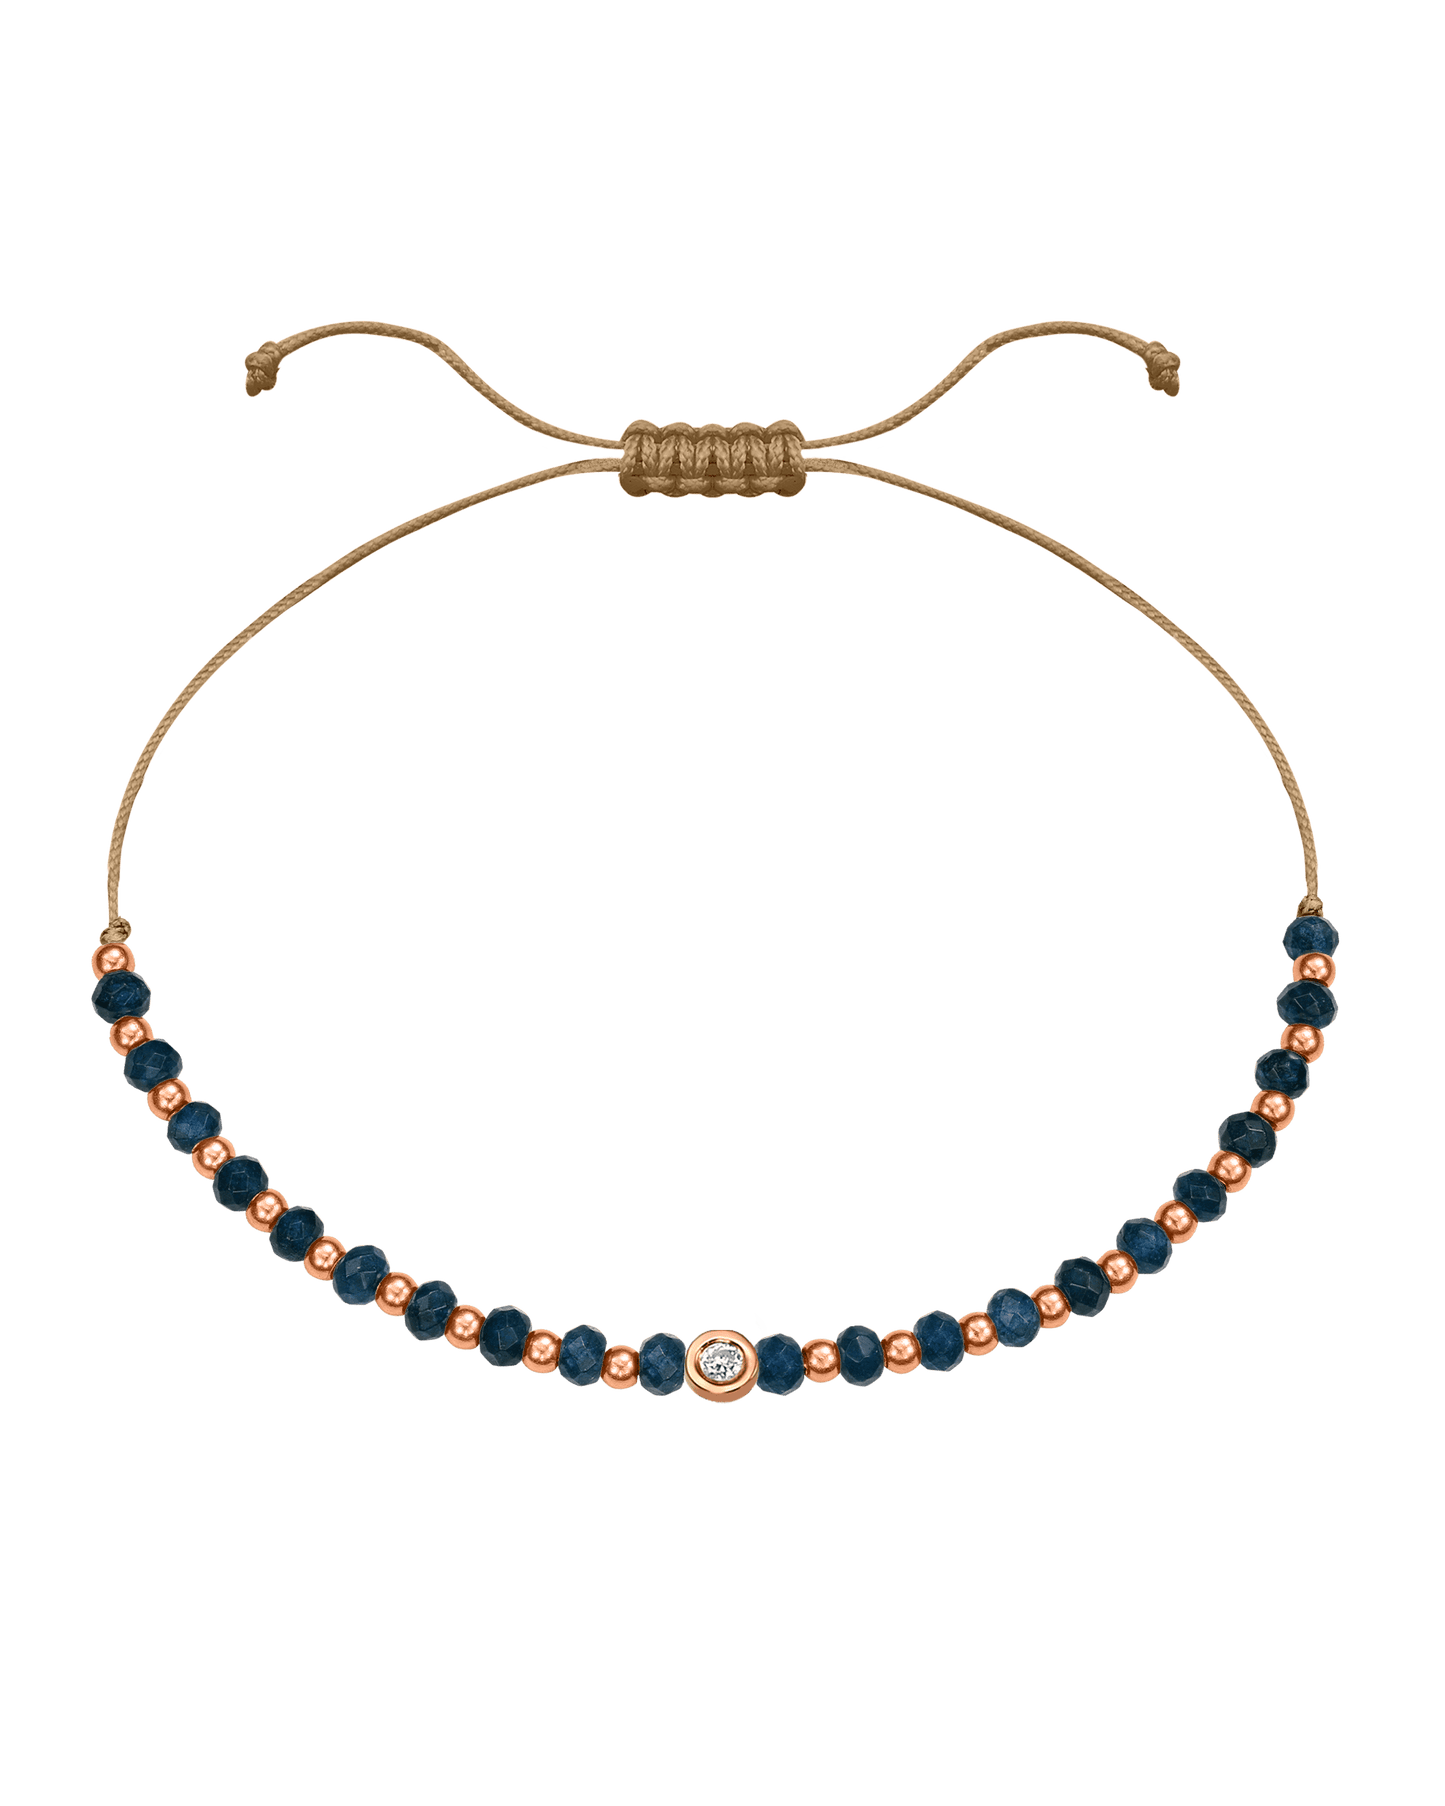 Lapis Gemstone String of Love Bracelet for Wisdom - 14K Rose Gold Bracelets 14K Solid Gold Camel Small: 0.03ct 